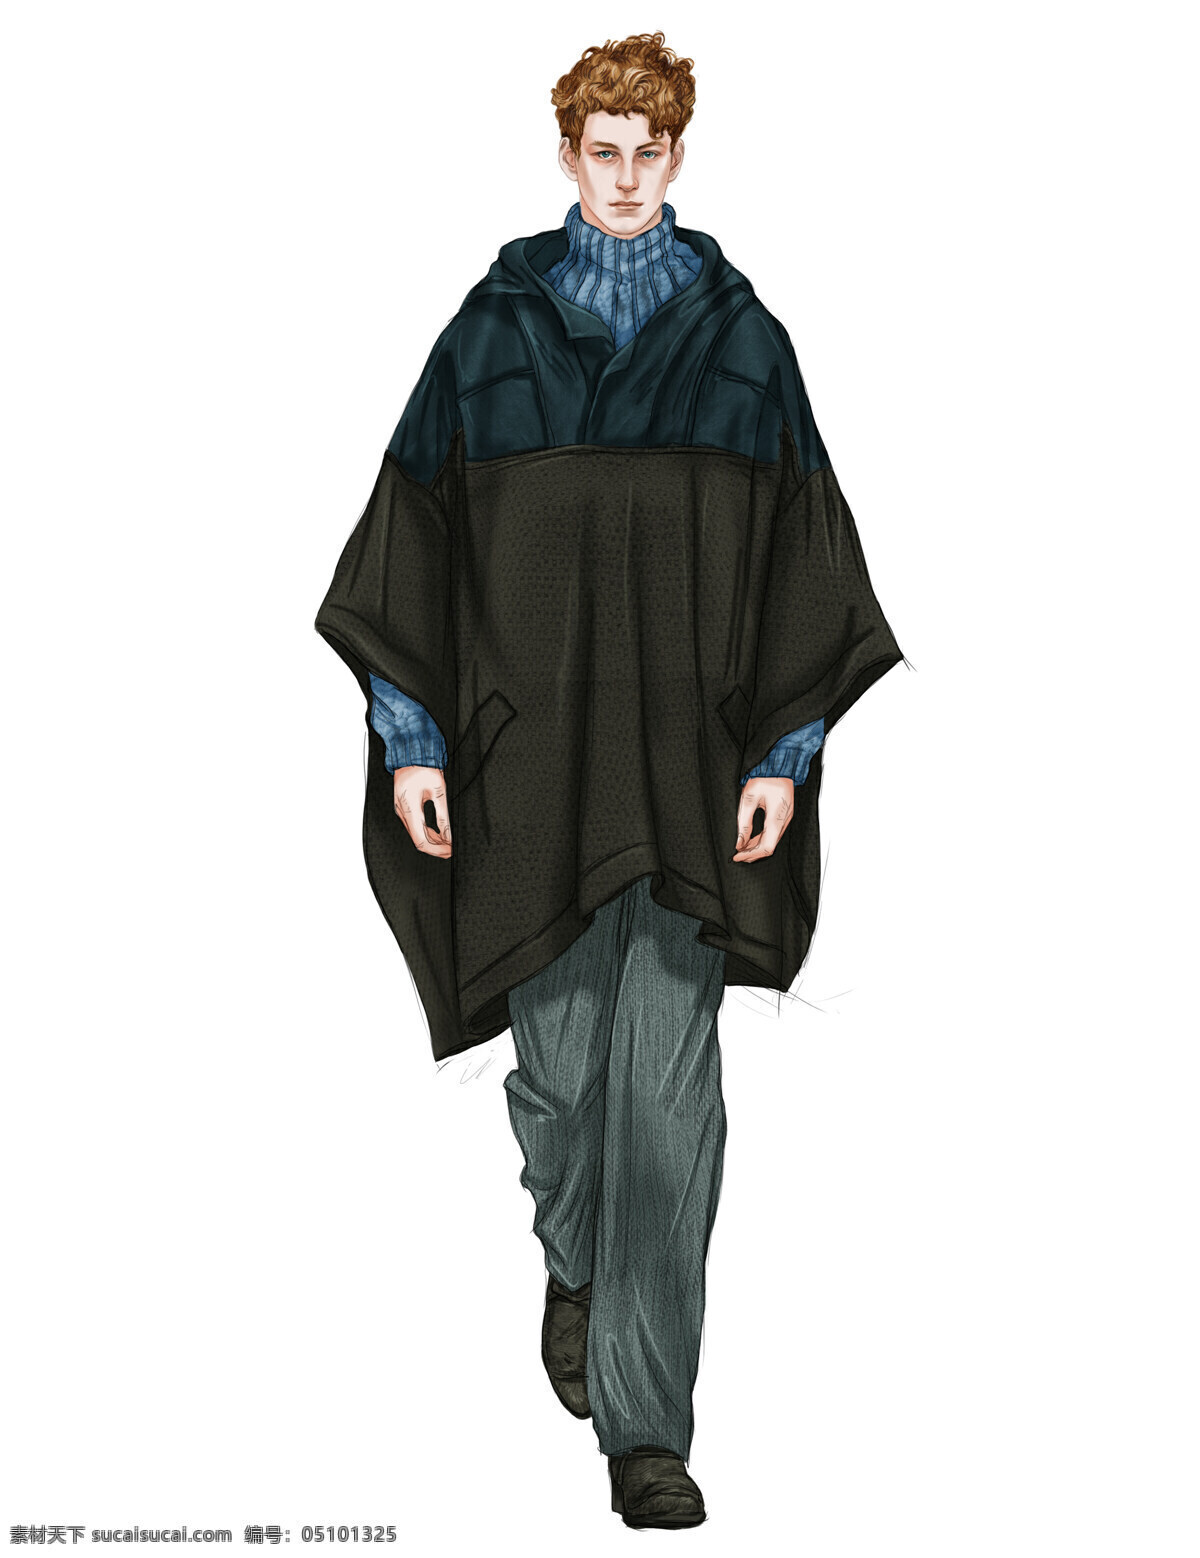 时尚 深色 蝙蝠 袖 上衣 男装 效果图 蝙蝠袖上衣 服装设计 男装效果图 时尚男装